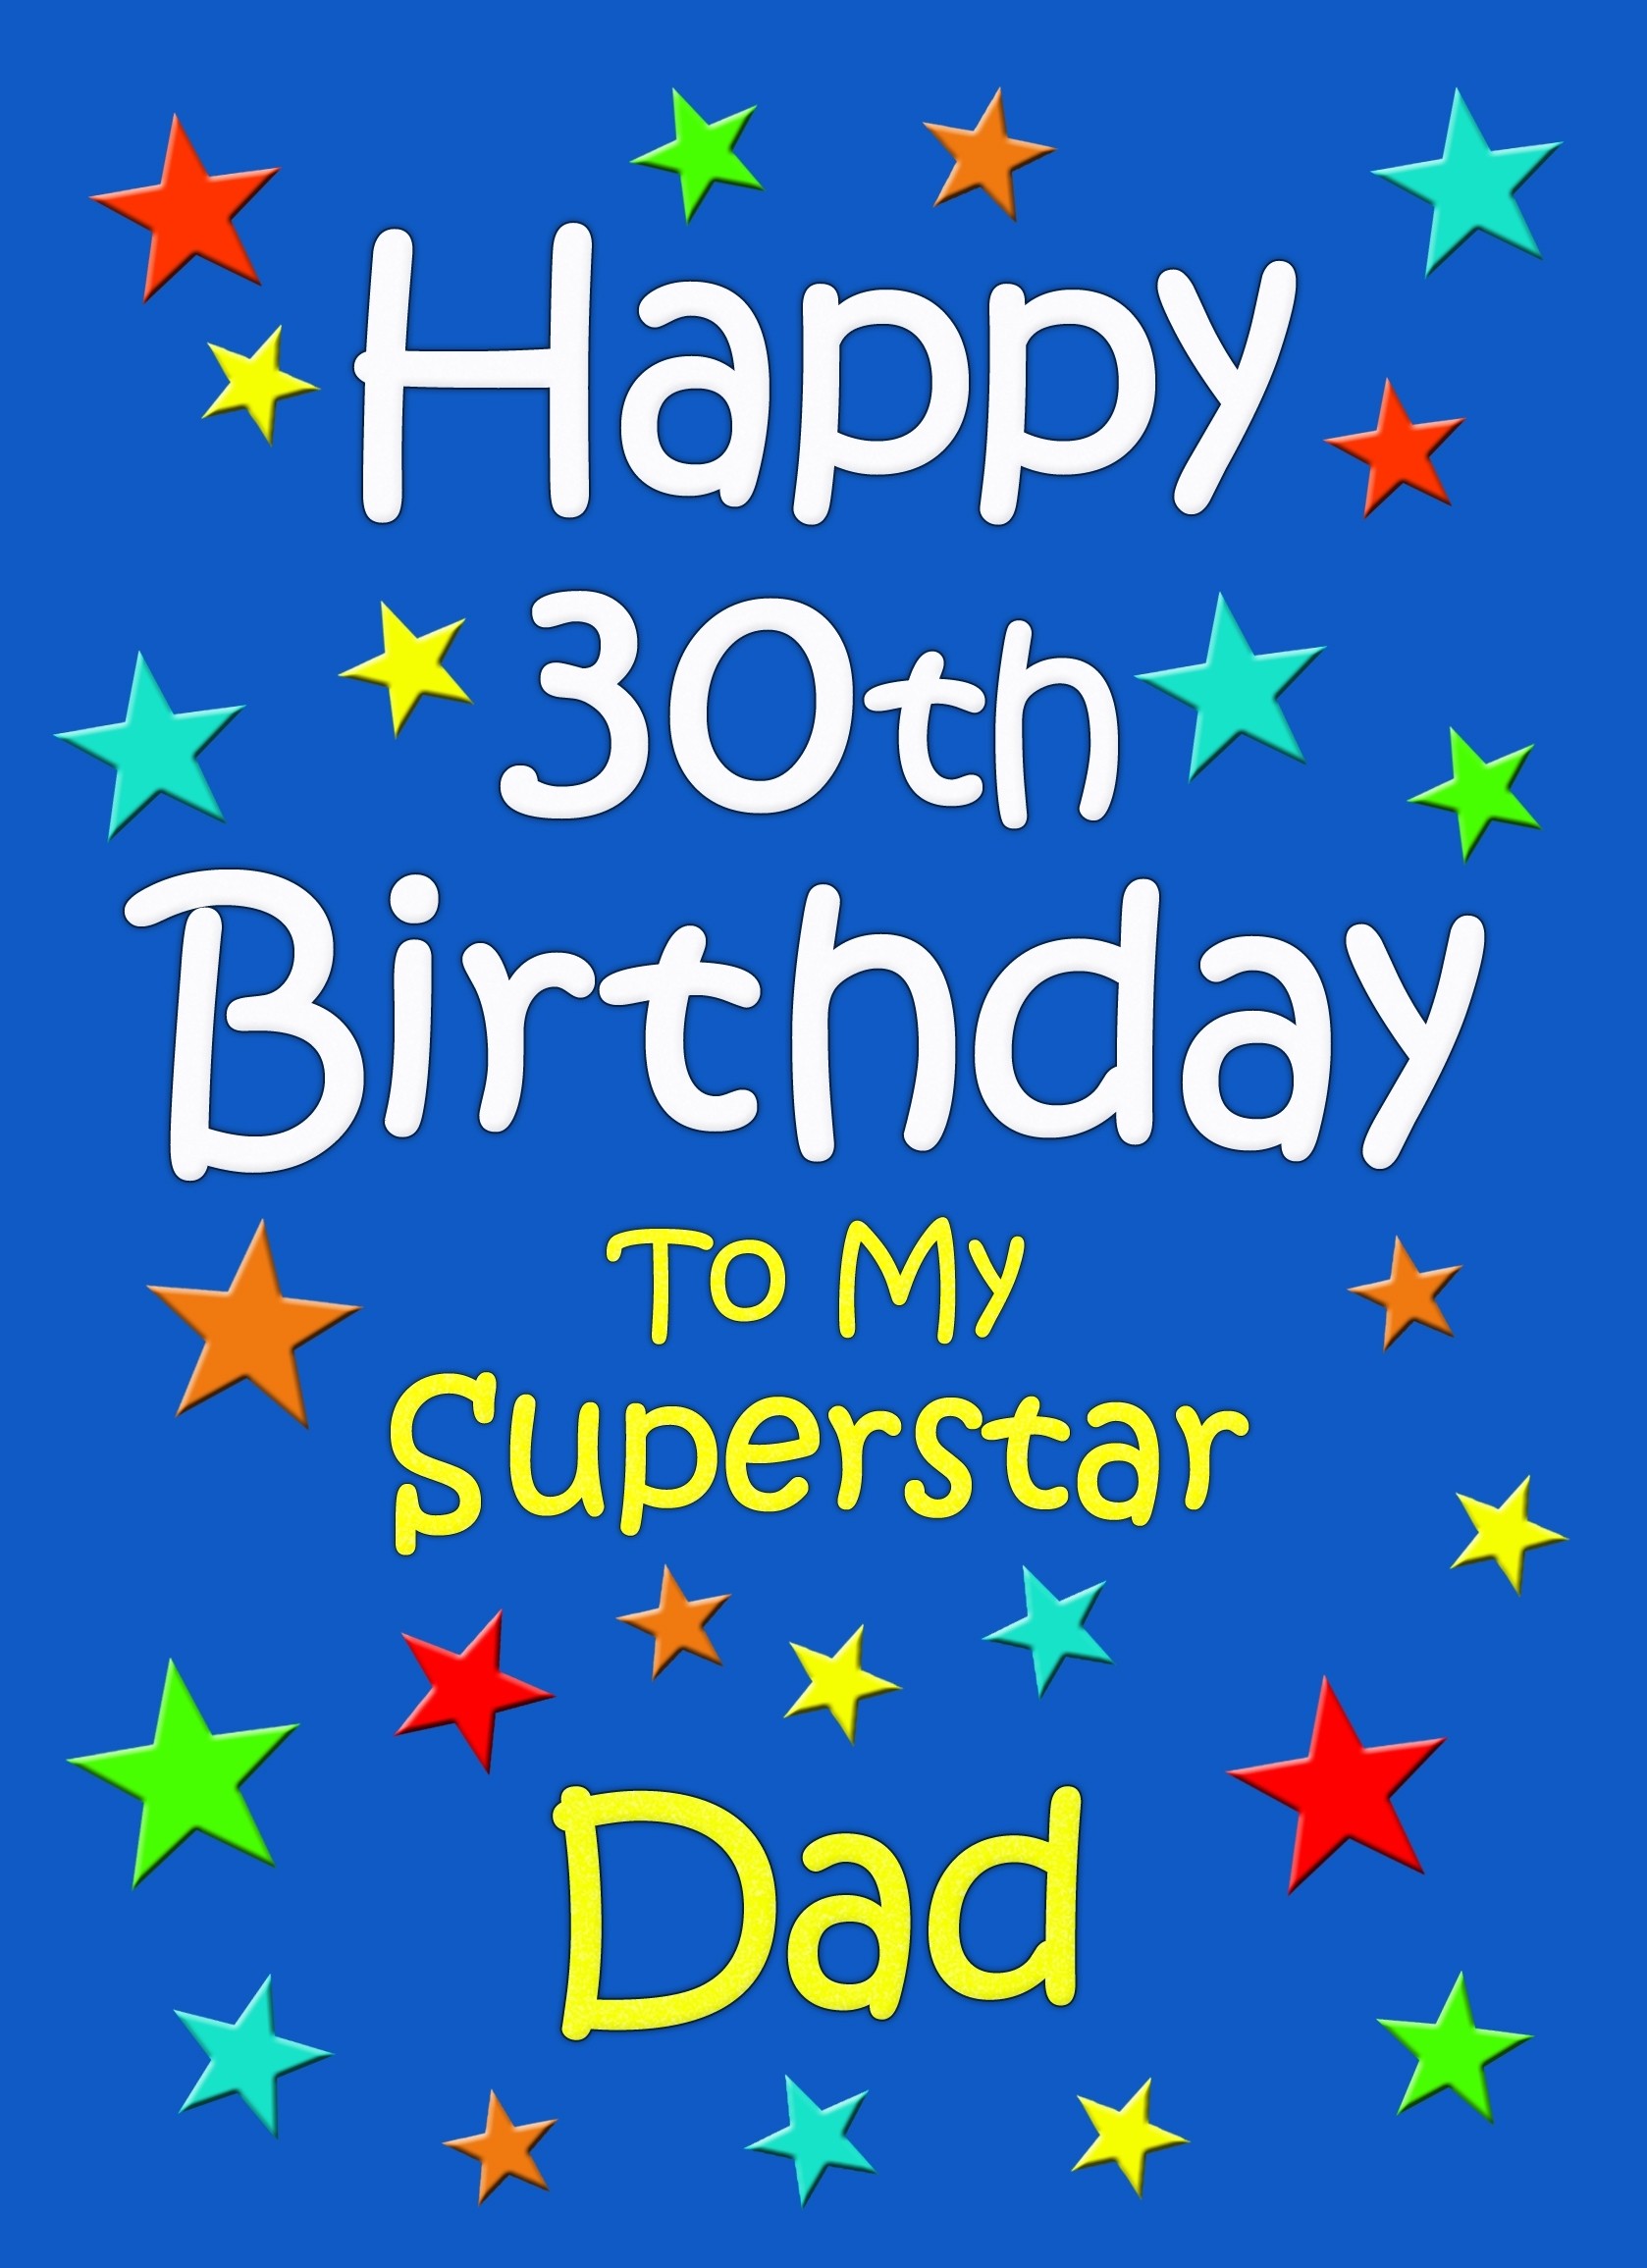 Dad 30th Birthday Card (Blue)